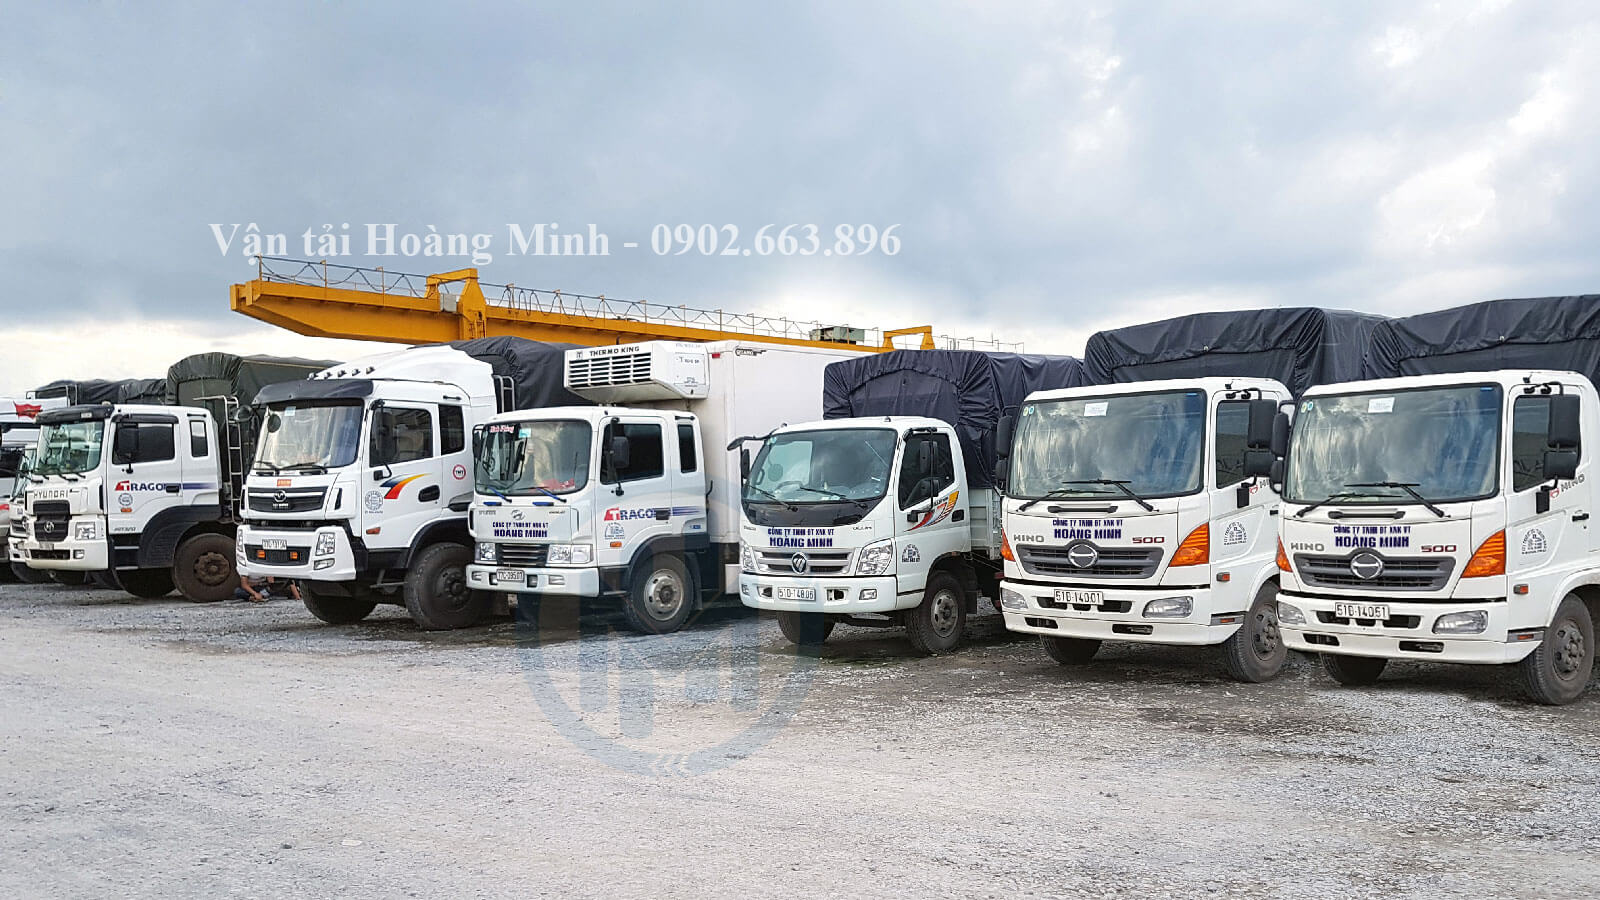 Vận tải Hoàng Minh cho thuê các loại xe tải vận chuyển nào